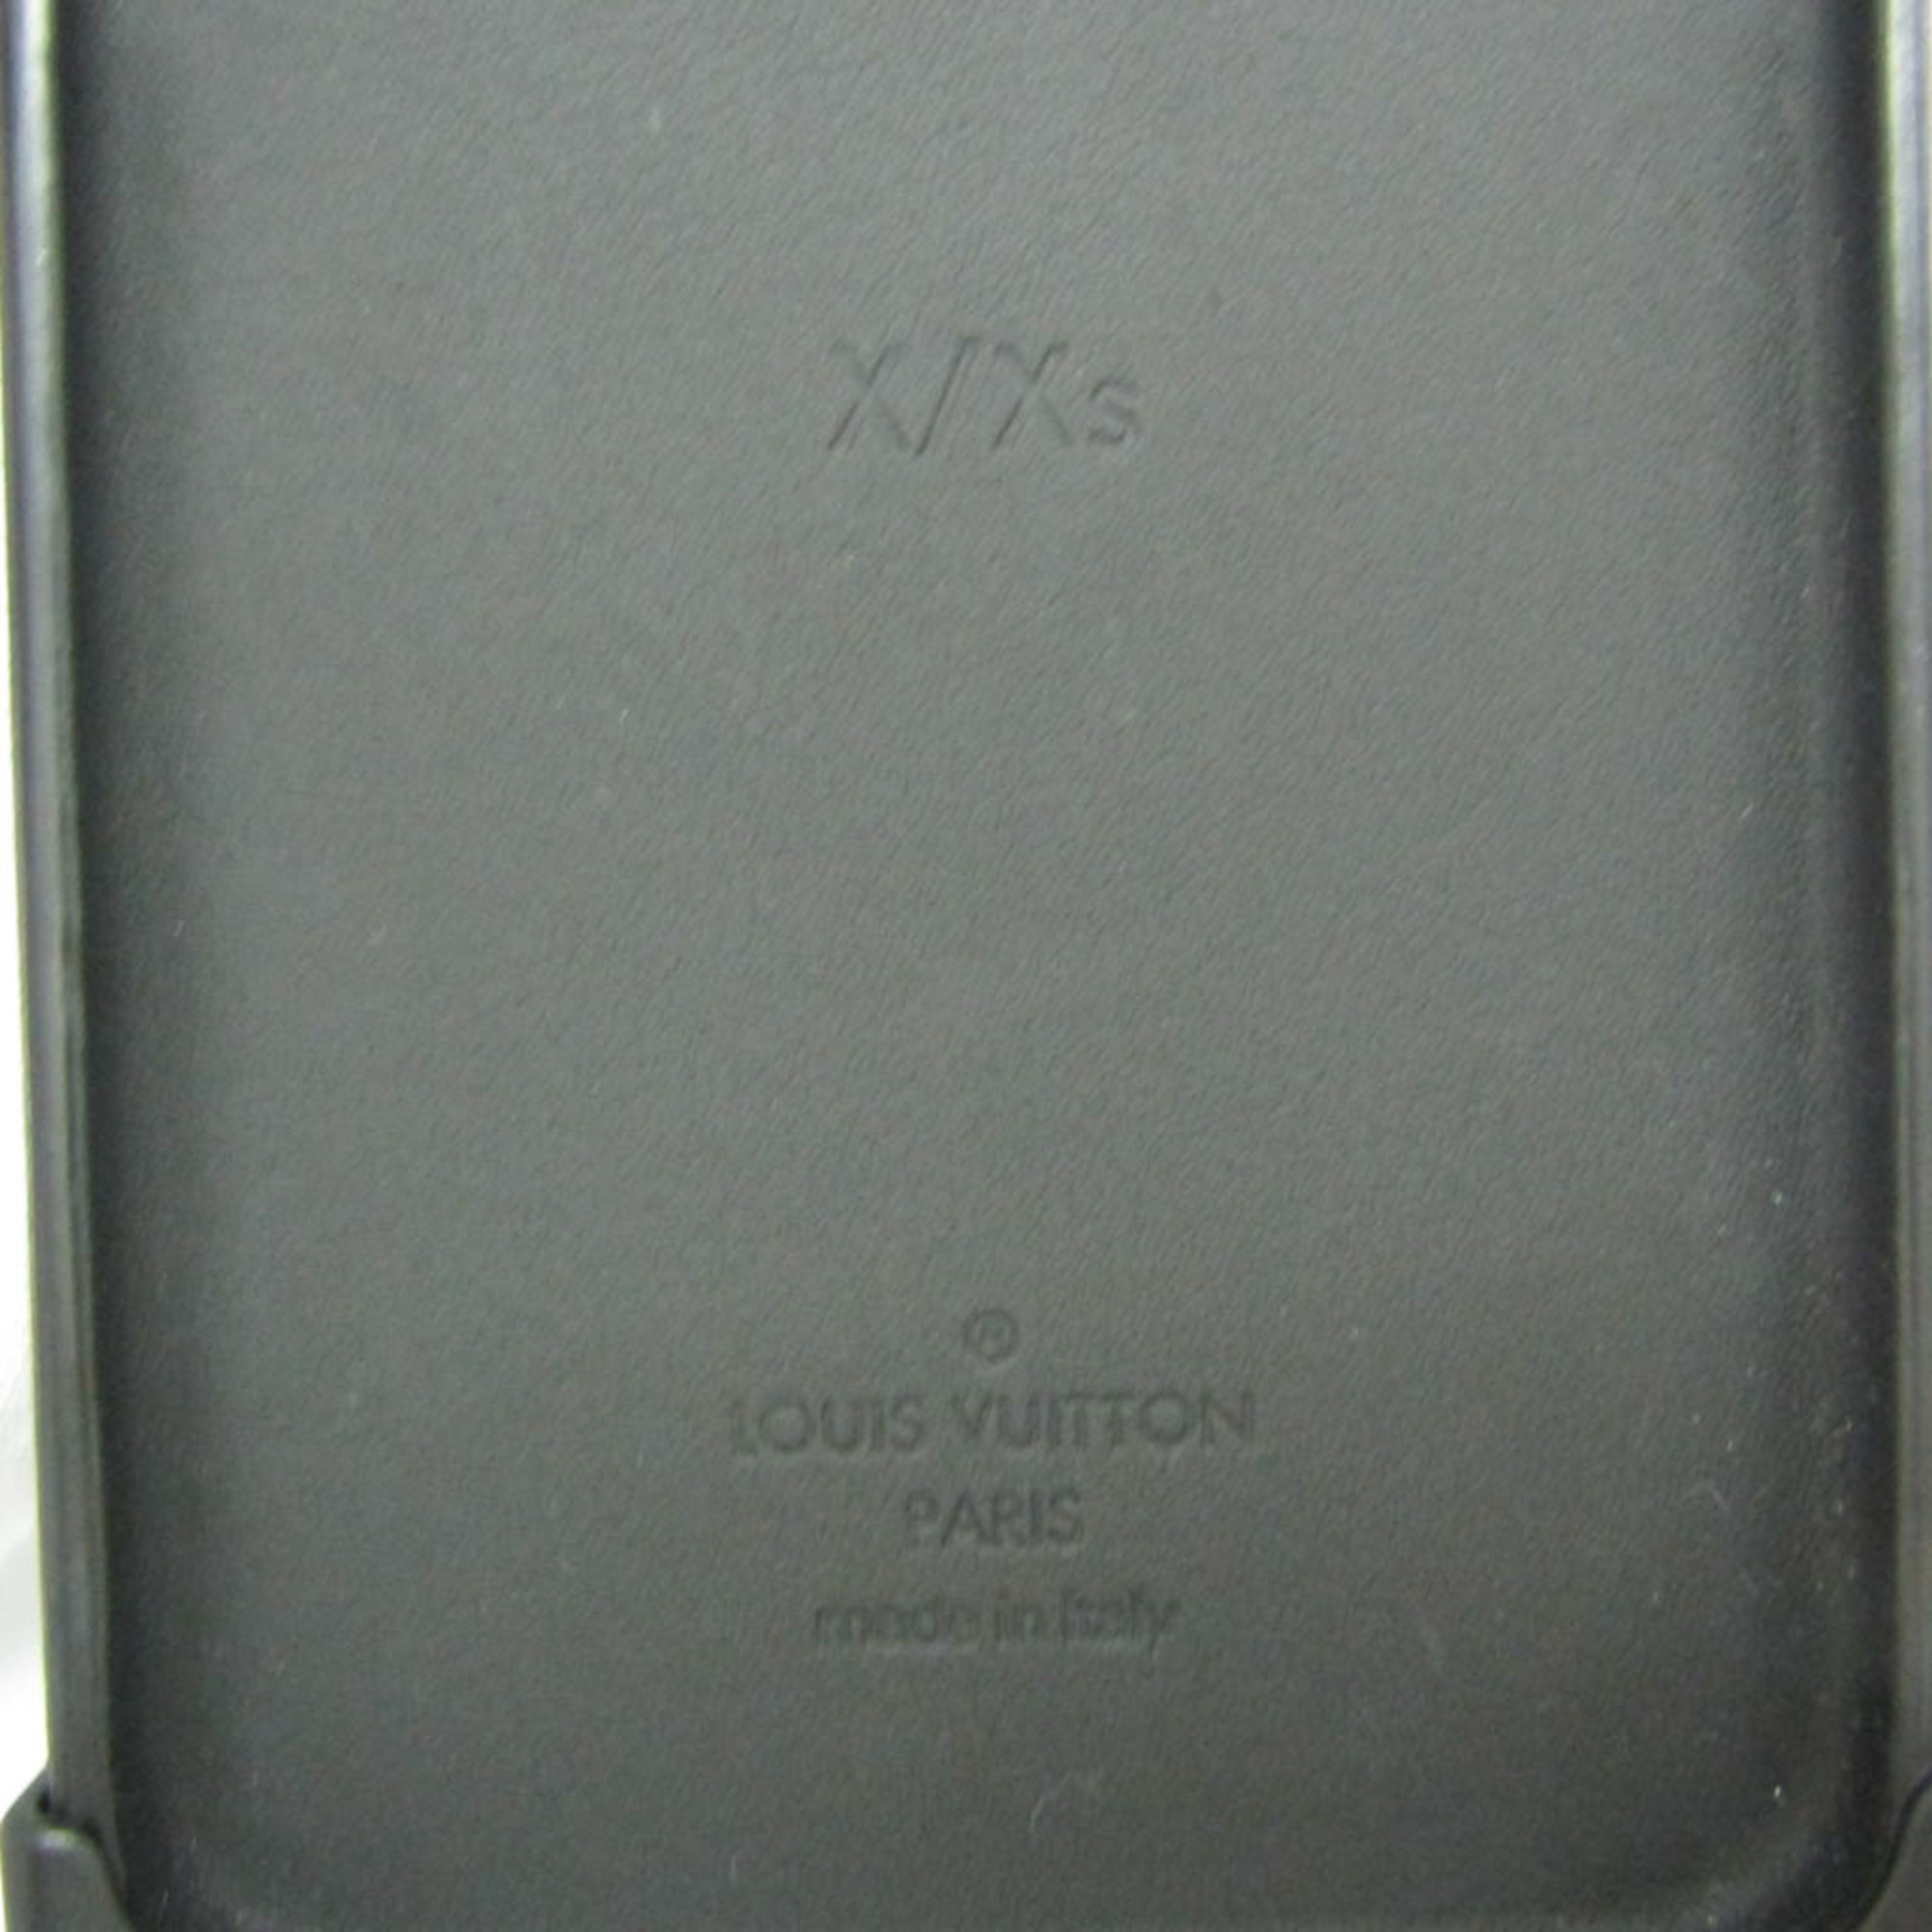 ルイ・ヴィトン(Louis Vuitton) モノグラム Phone X/XS アイ トランク ライト M67892 モノグラム バンパー iPhone X 対応 モノグラム,ノワール